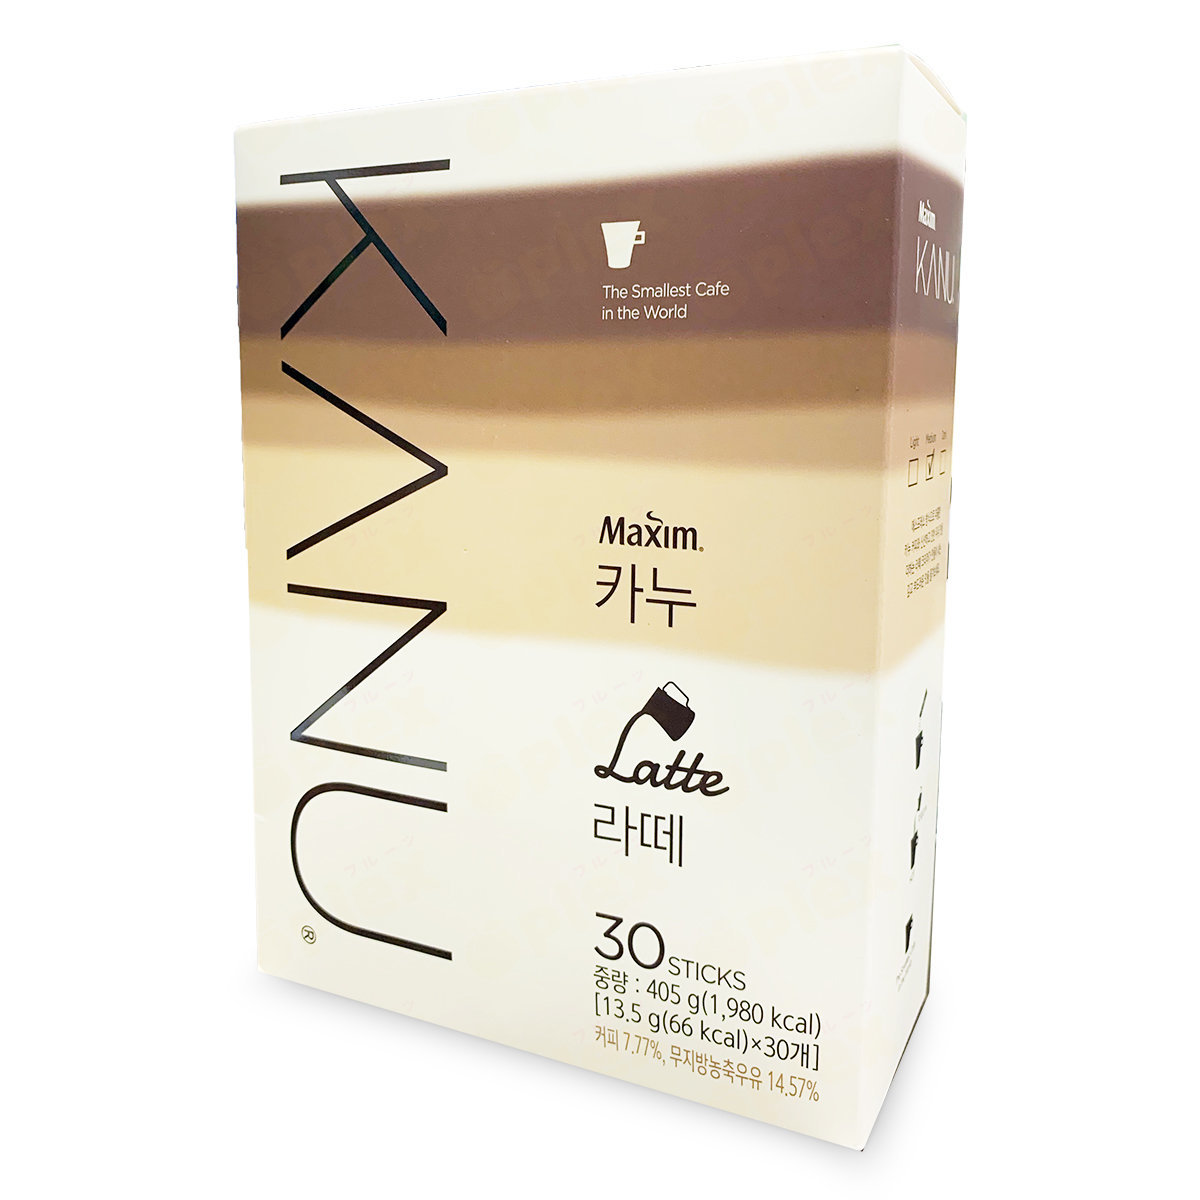 韓國拿鐵即沖咖啡 (30包) #孔劉代言 #Latte #拿鐵 (食用日期:2025年7月10日)